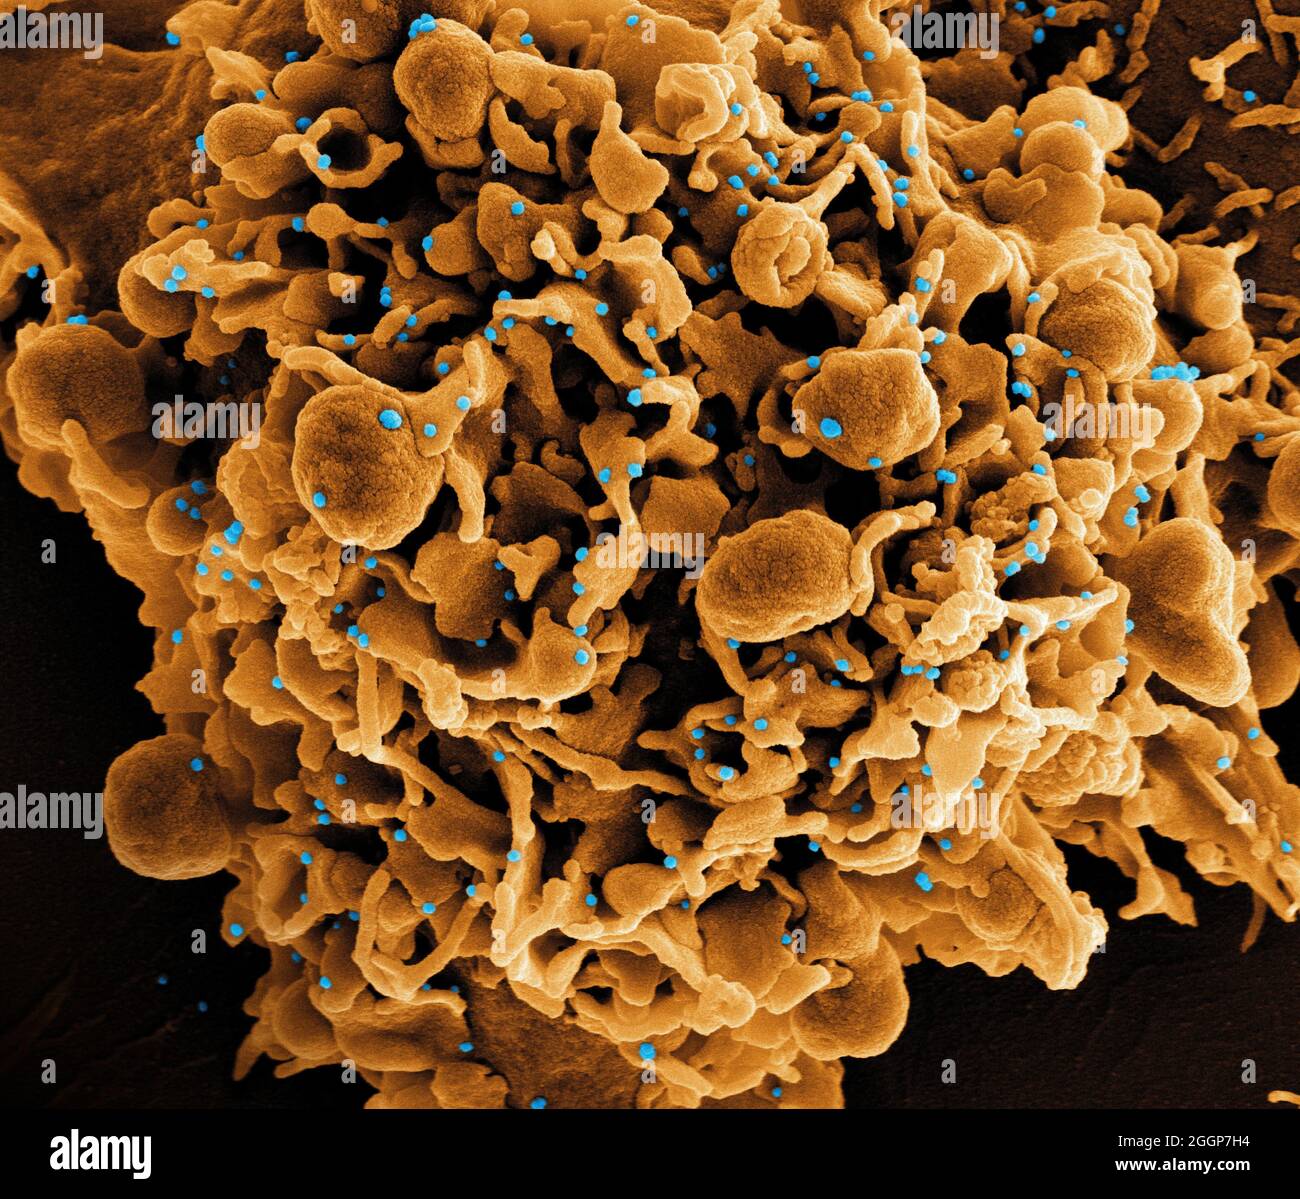 Micrografía electrónica coloreada de una célula (marrón) infectada con partículas del virus SARS-CoV-2 (azul), aislada de una muestra de paciente. Foto de stock